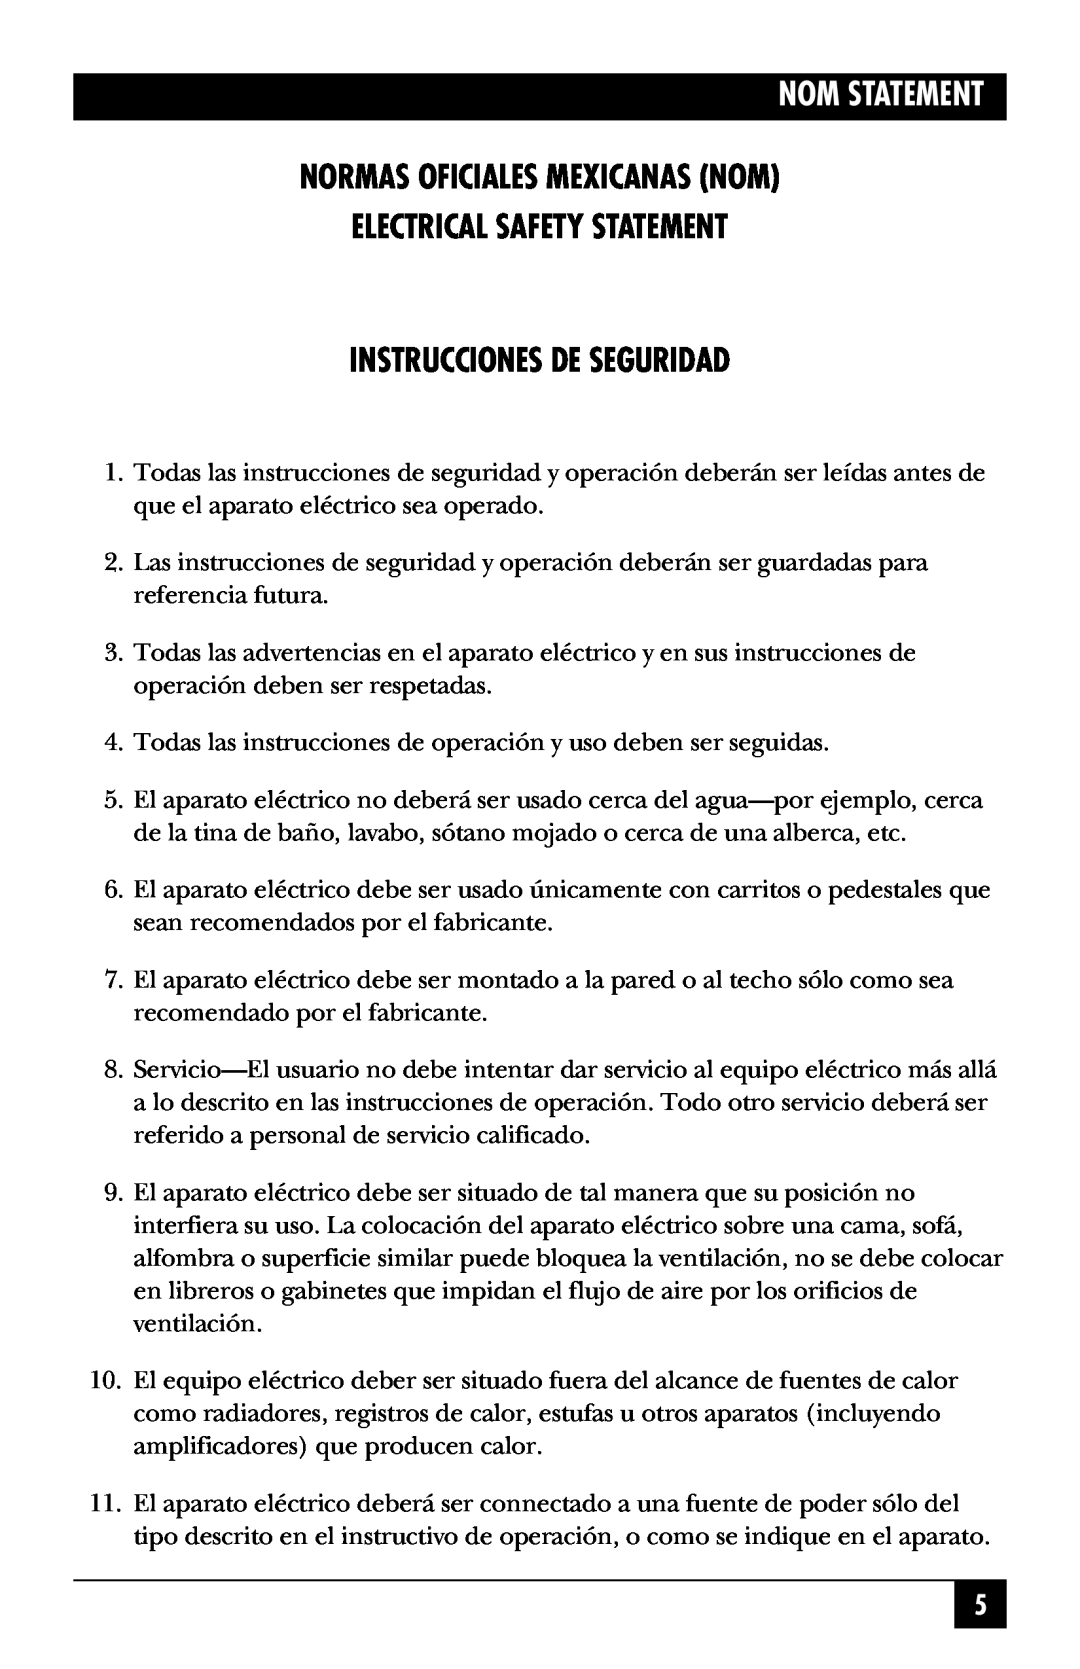 Black Box KV812A Nom Statement, Normas Oficiales Mexicanas Nom Electrical Safety Statement, Instrucciones De Seguridad 